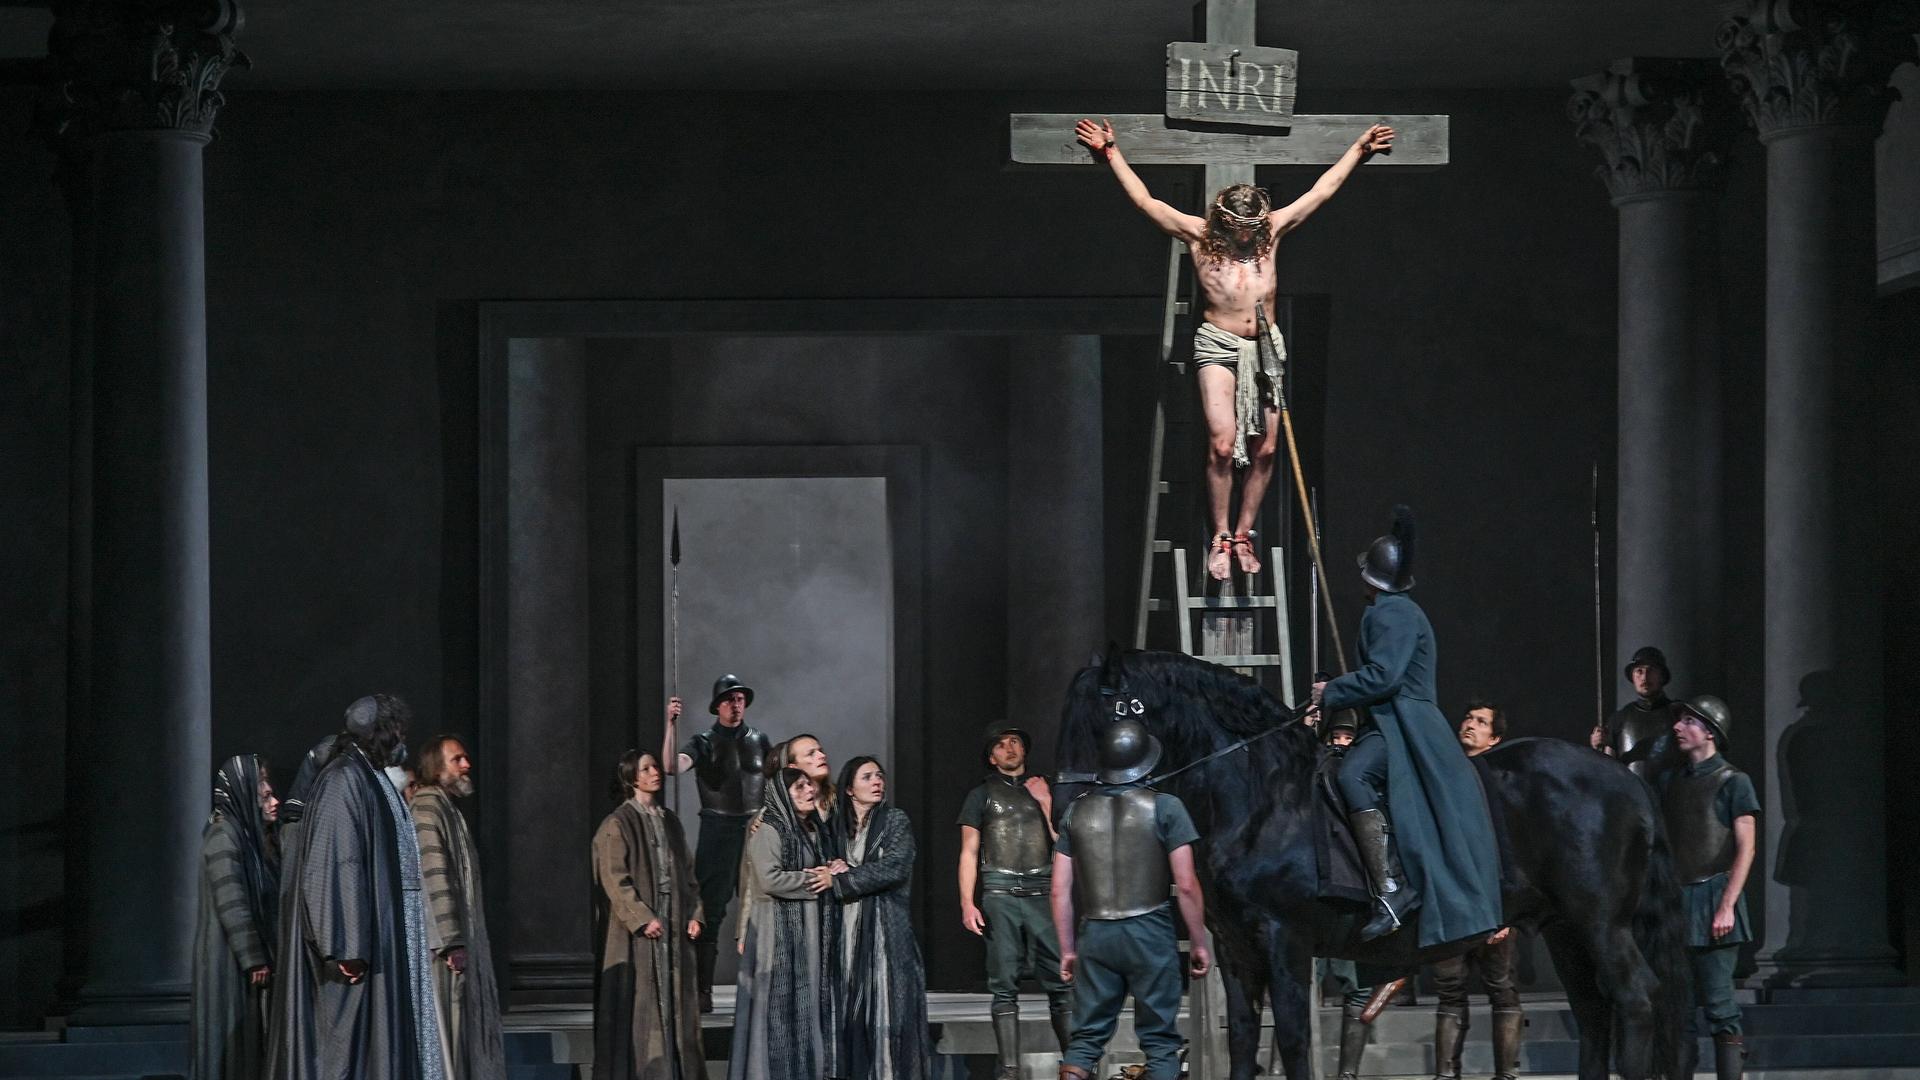 Bei der Fotoprobe zu den 42. Oberammergauer Passionsspiele sind rund zwei Dutzend Menschen auf der Bühne. Jesus hängt am Kreuz, ein römischer Soldat sticht mit einer Lanze in Jesu Brust.